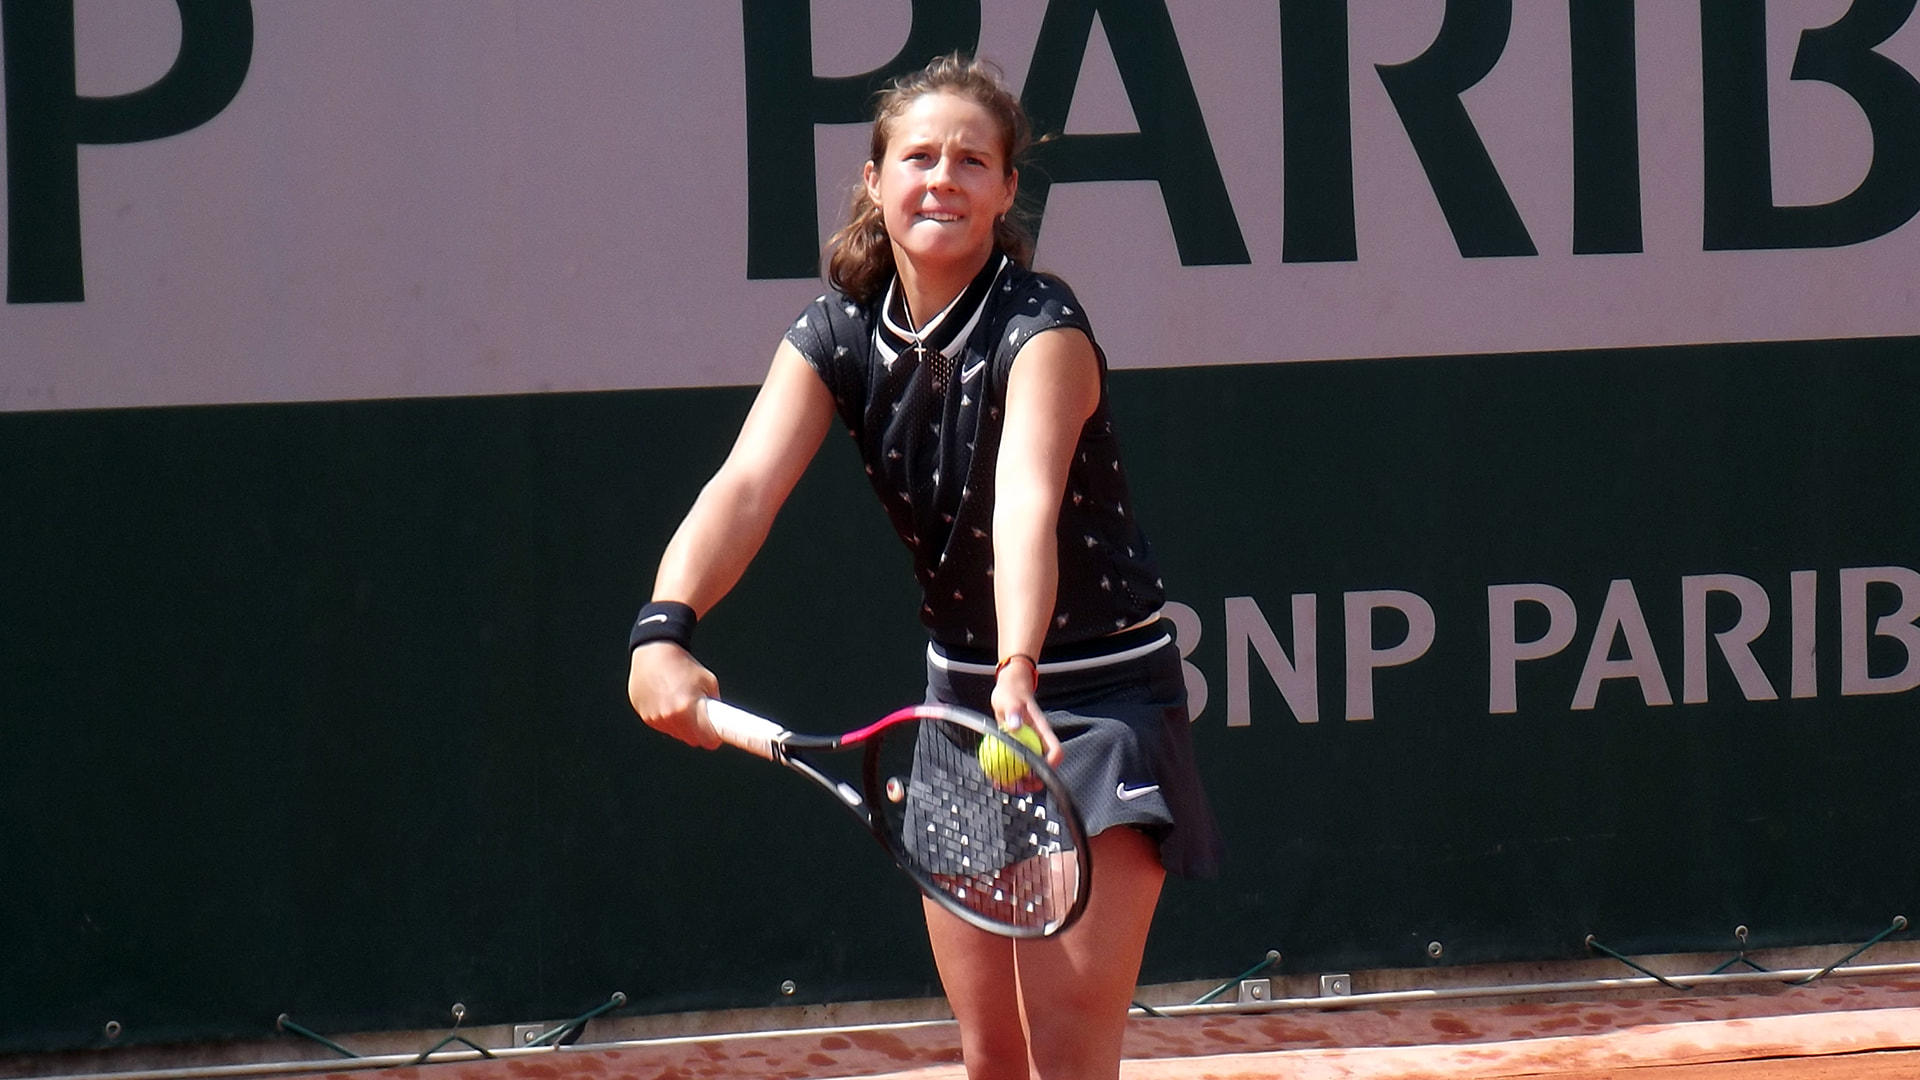 Daria Kasatkina at Roland Garros 2019